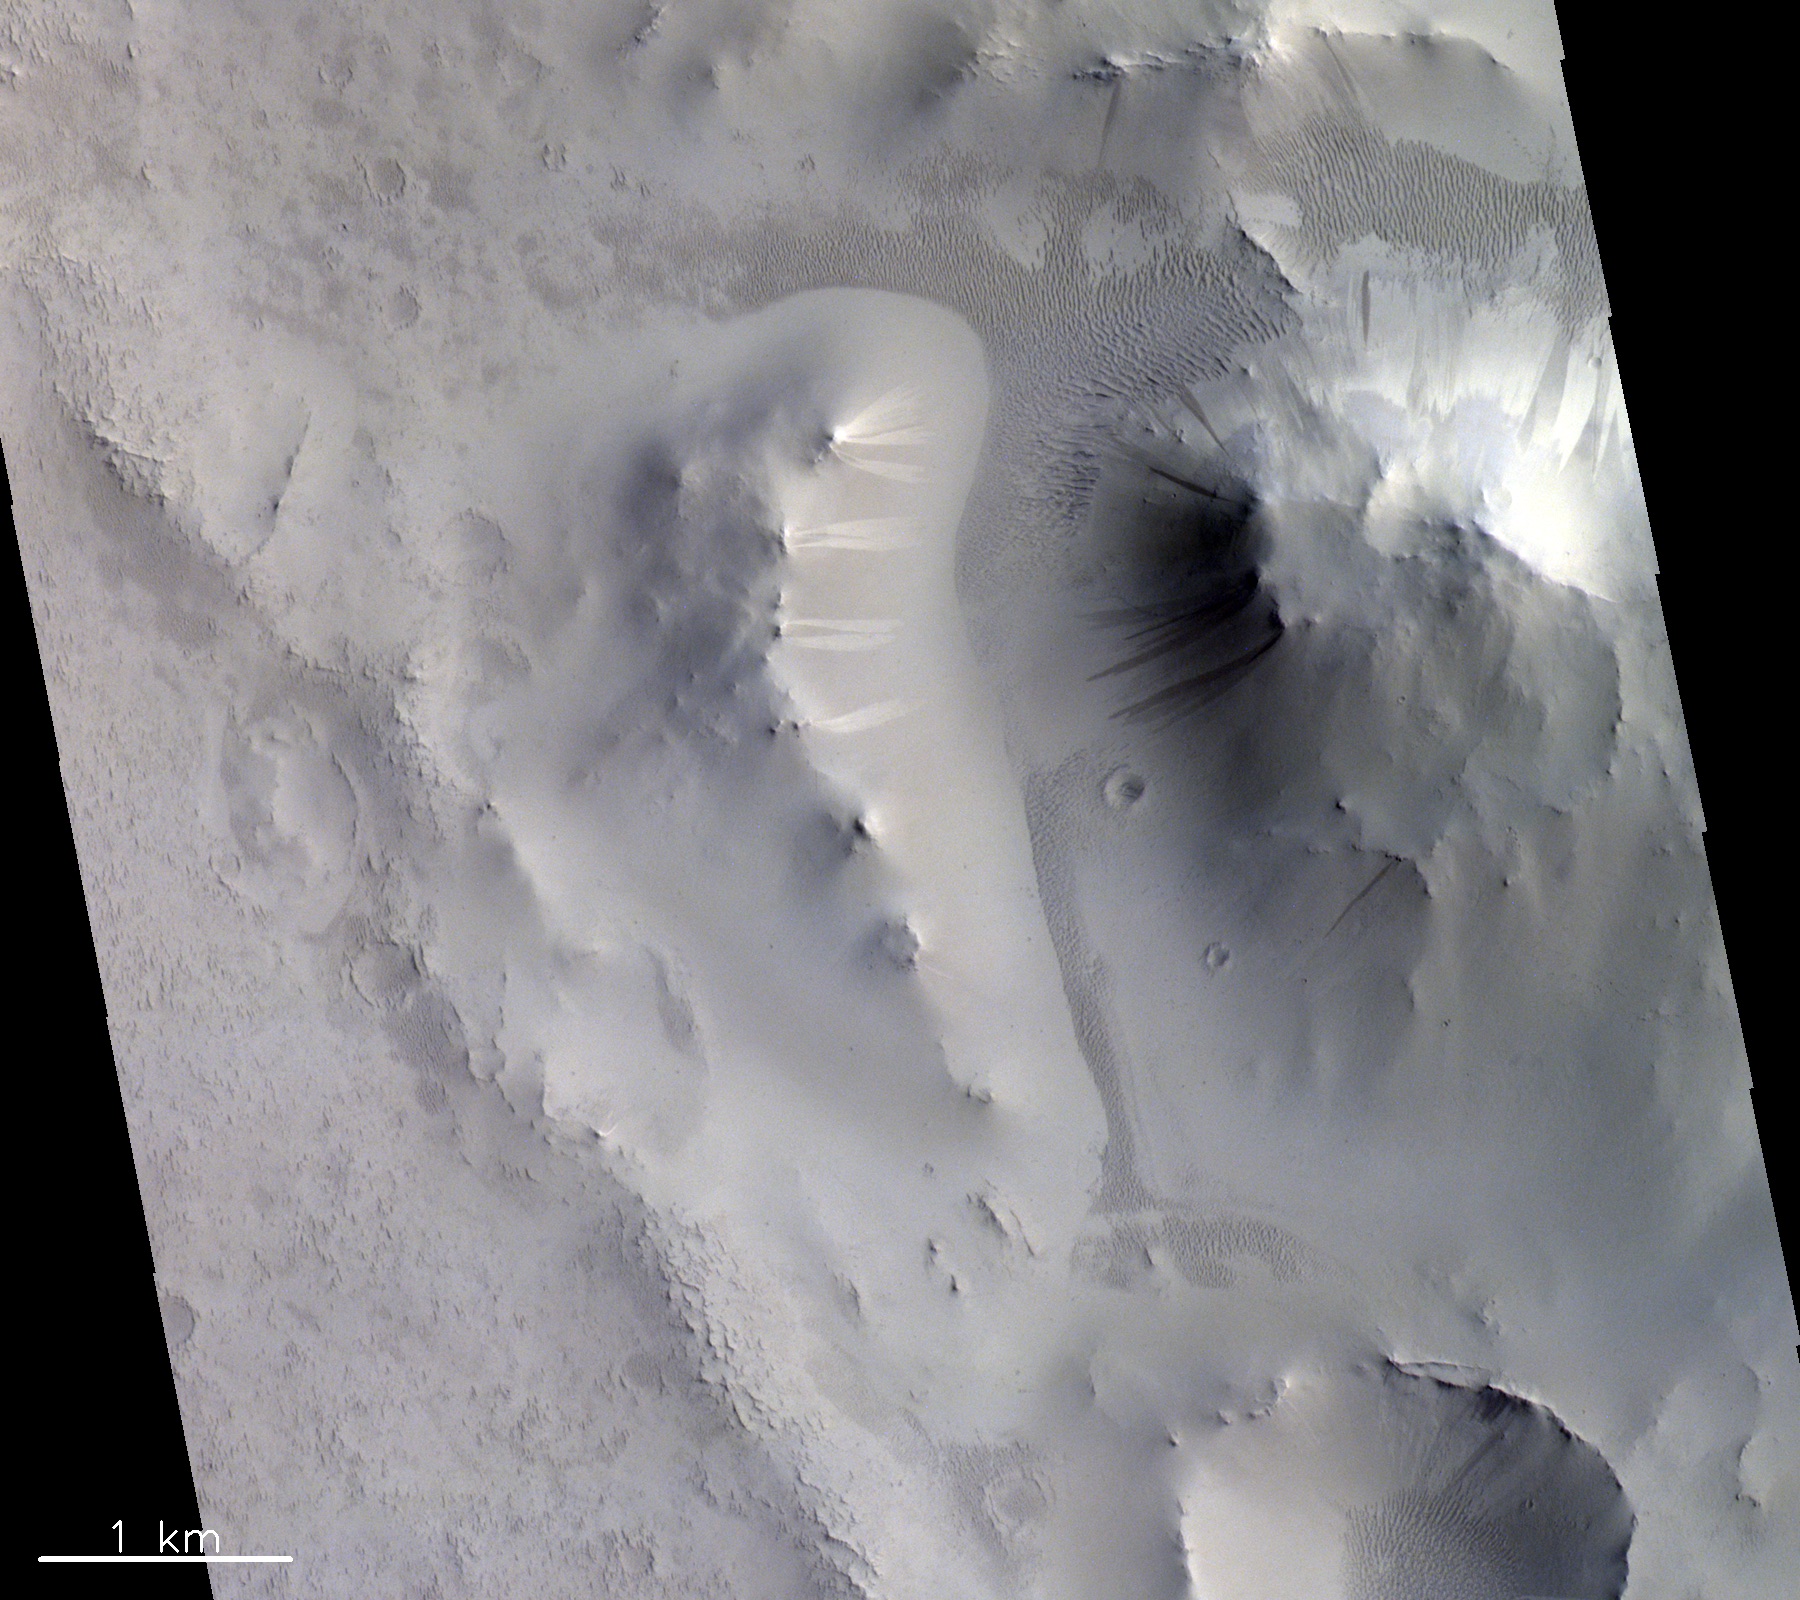 Dieses Bild zeigt markante helle und dunkle Streifen an Hängen in der Region Locras Vallis auf dem Mars. Der genaue Zusammenhang zwischen diesen Streifen wird noch diskutiert, aber die führende Theorie legt nahe, dass sie durch trockene Lawinenprozesse gebildet werden.   © ESA/Roscosmos/CaSSIS, CC BY-SA 3.0 IGO